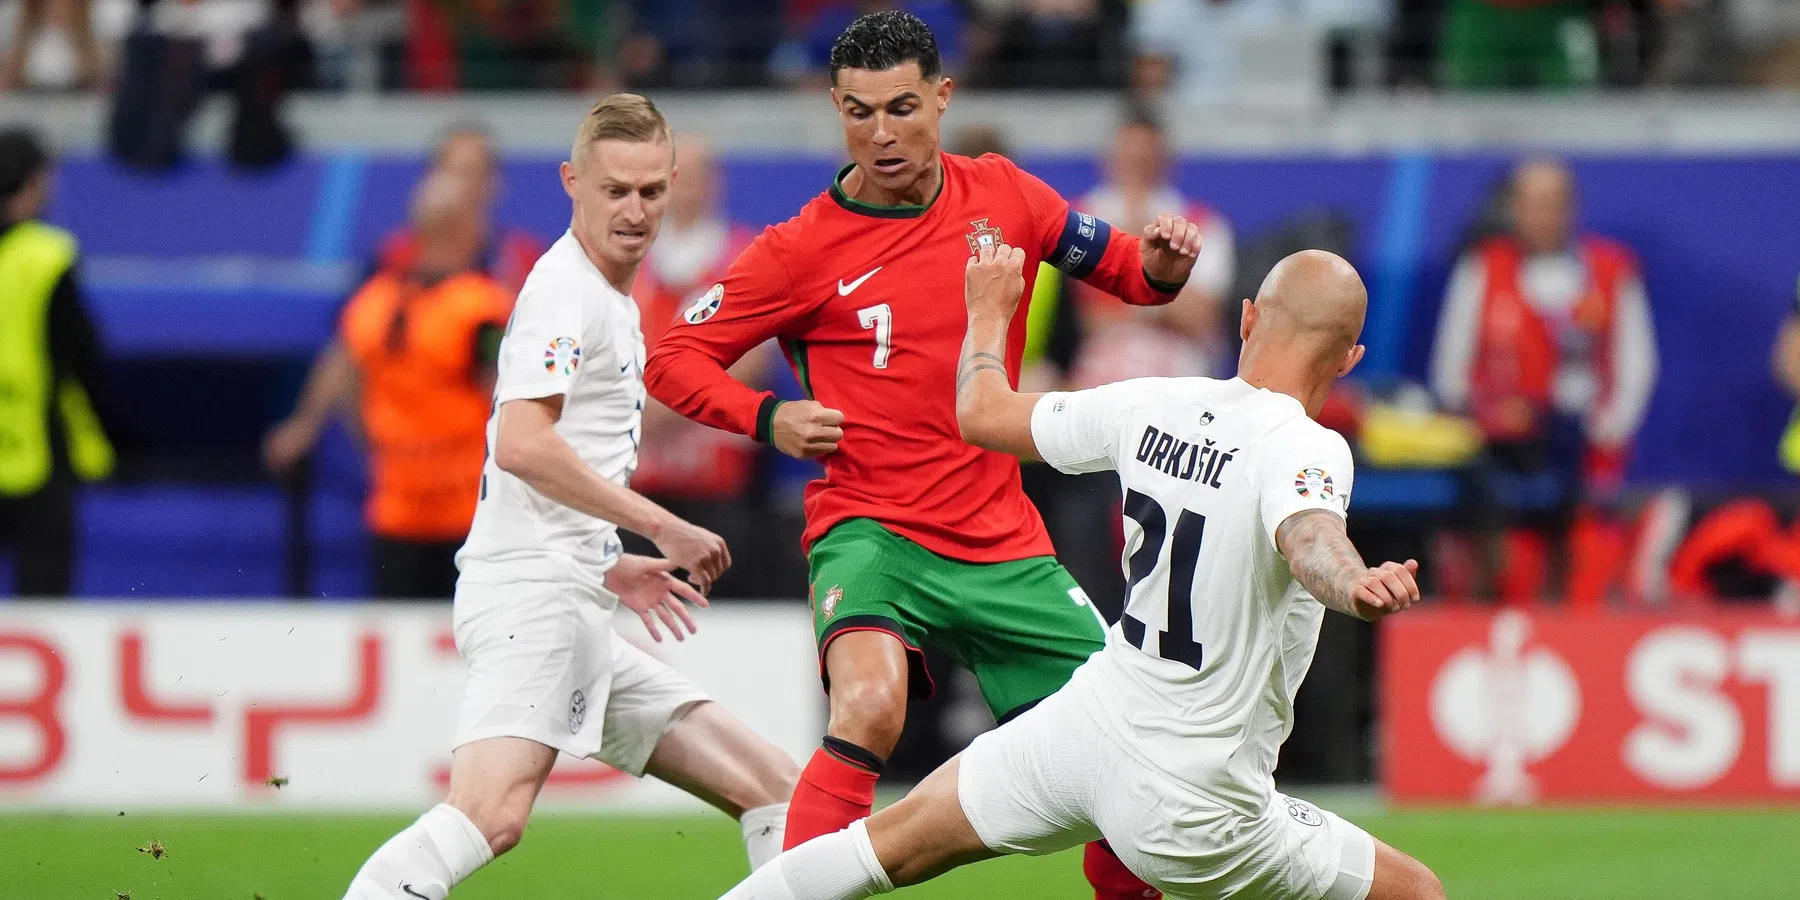 Lees hier de wedstrijd tussen Portugal en Slovenië terug